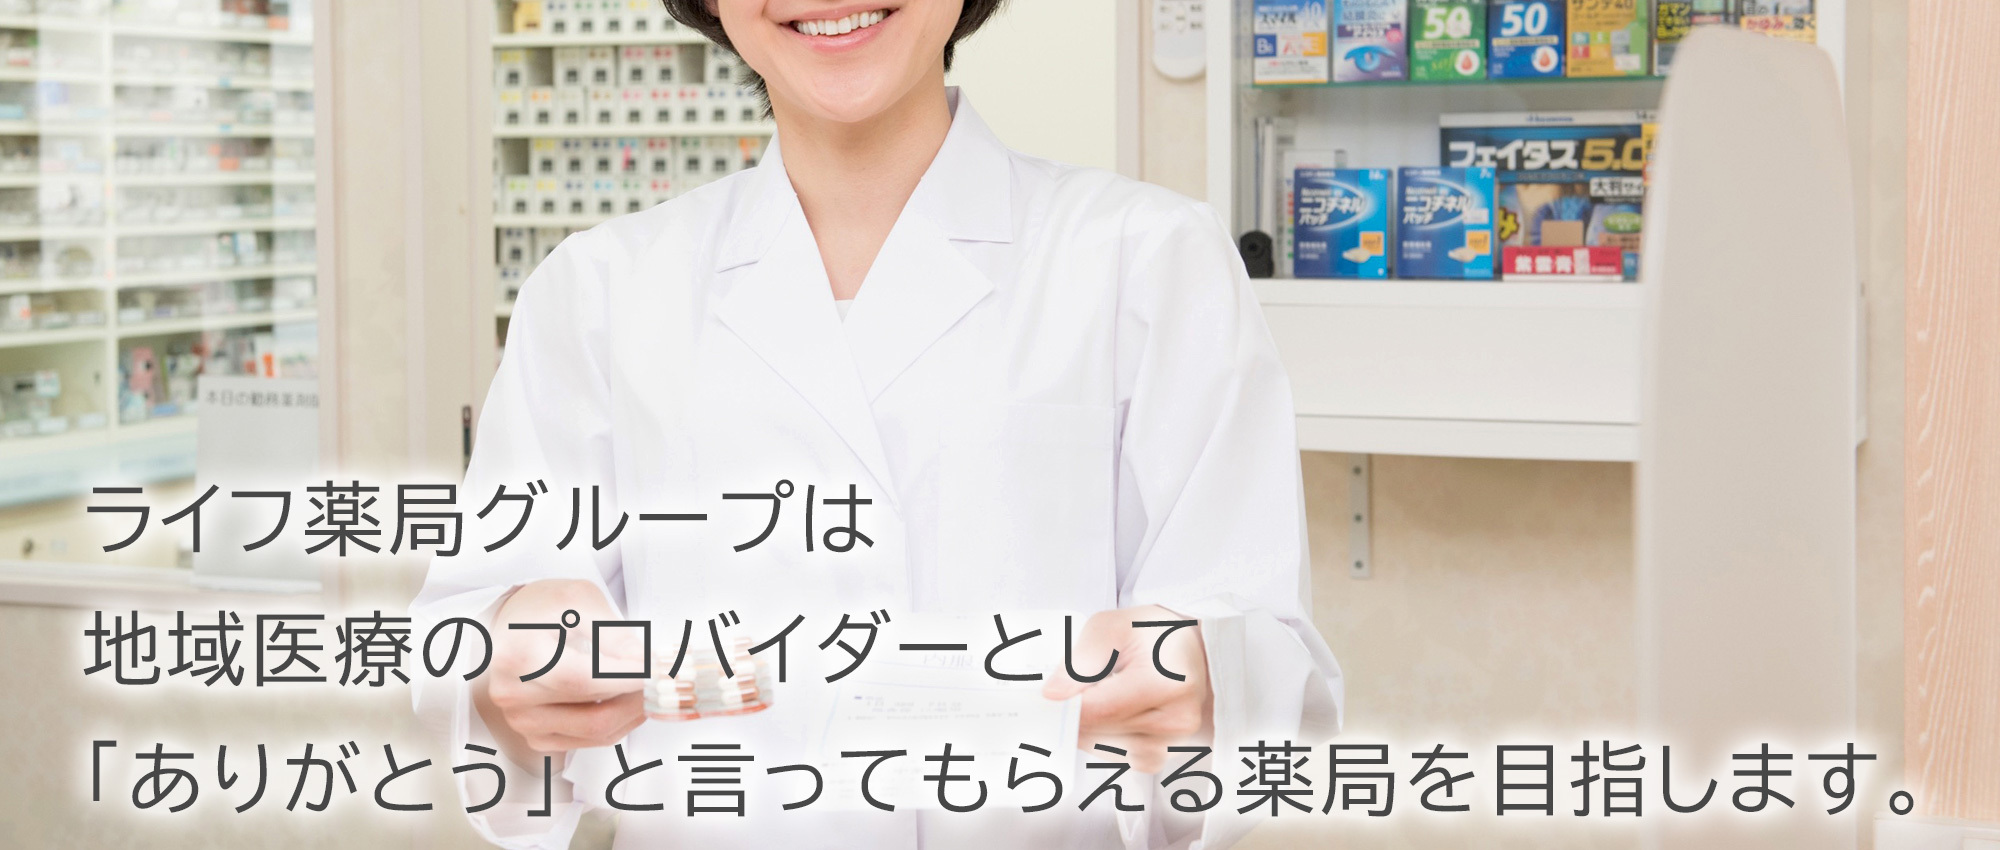 藤沢市菖蒲沢 保険調剤薬局 訪問看護ステーションの運営